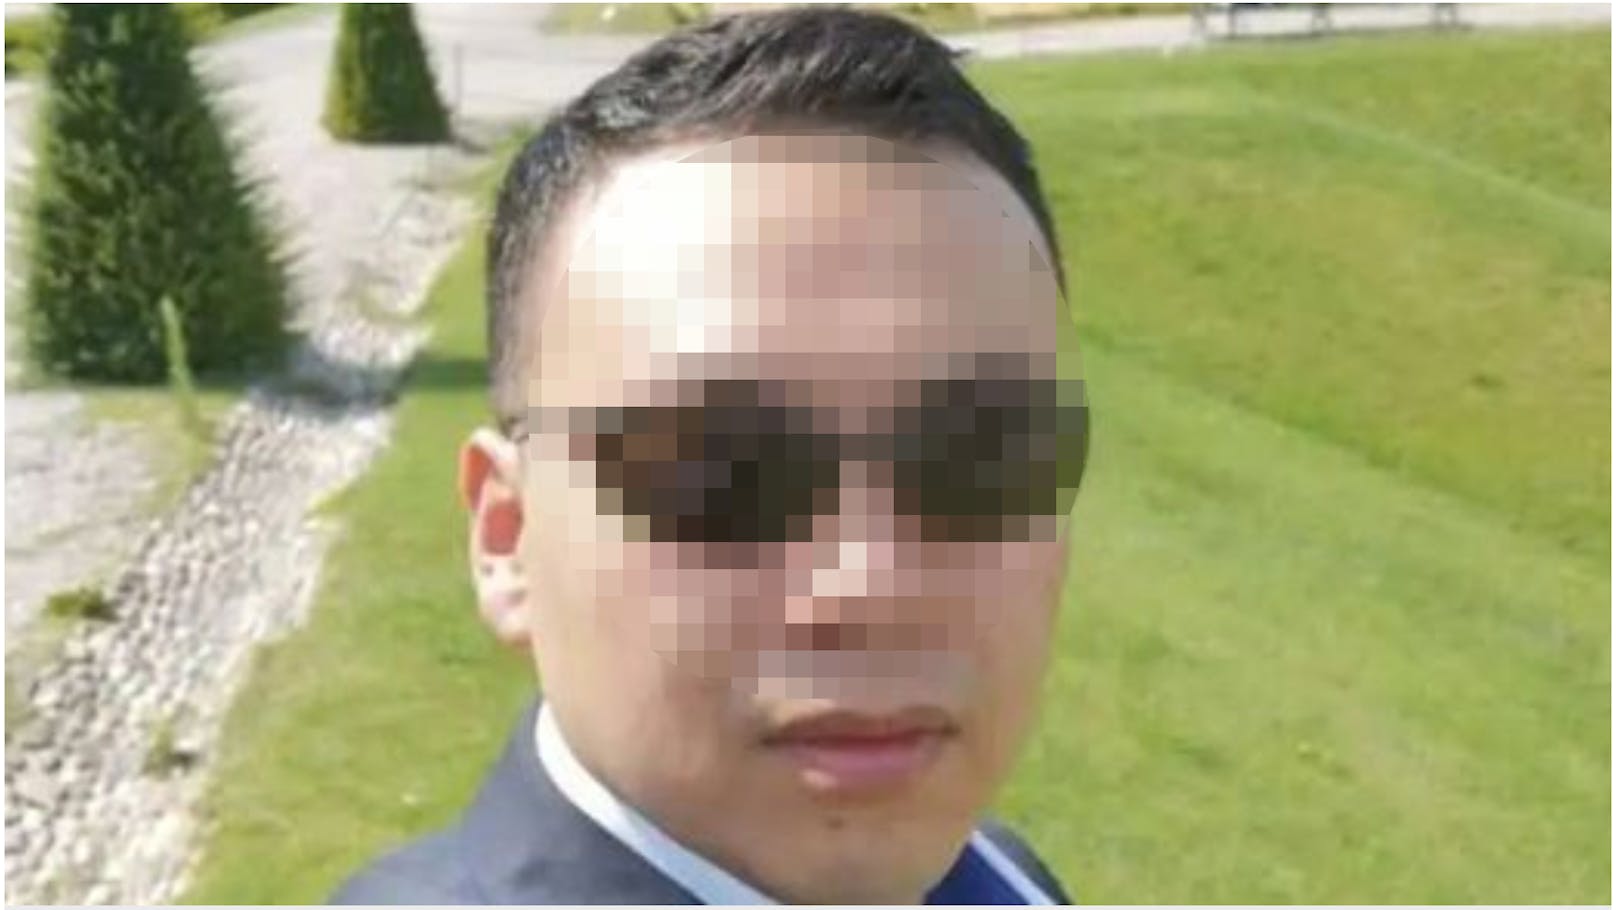 Erschossen, als er die Lokaltüre verbarrikadieren wollte: Tiefe Trauer um den in Wien getöteten Gastronom Qiang Li (40)